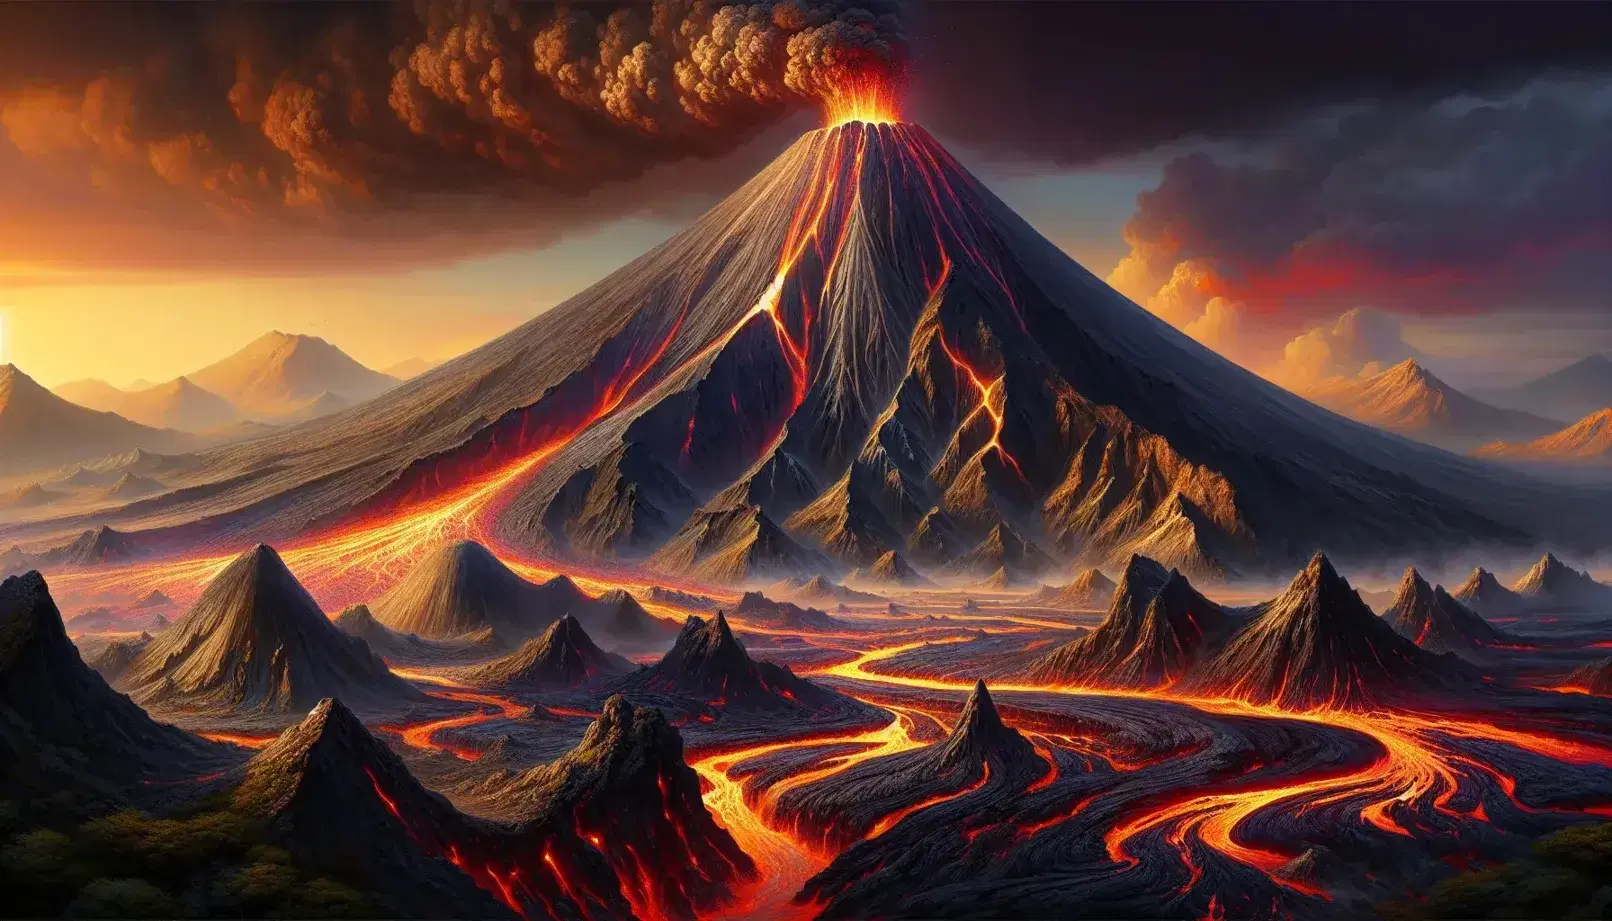 Eruzione vulcanica con colonna di fumo e lava incandescente che scorre lungo pendii scuri, sotto un cielo arancione e rosso.